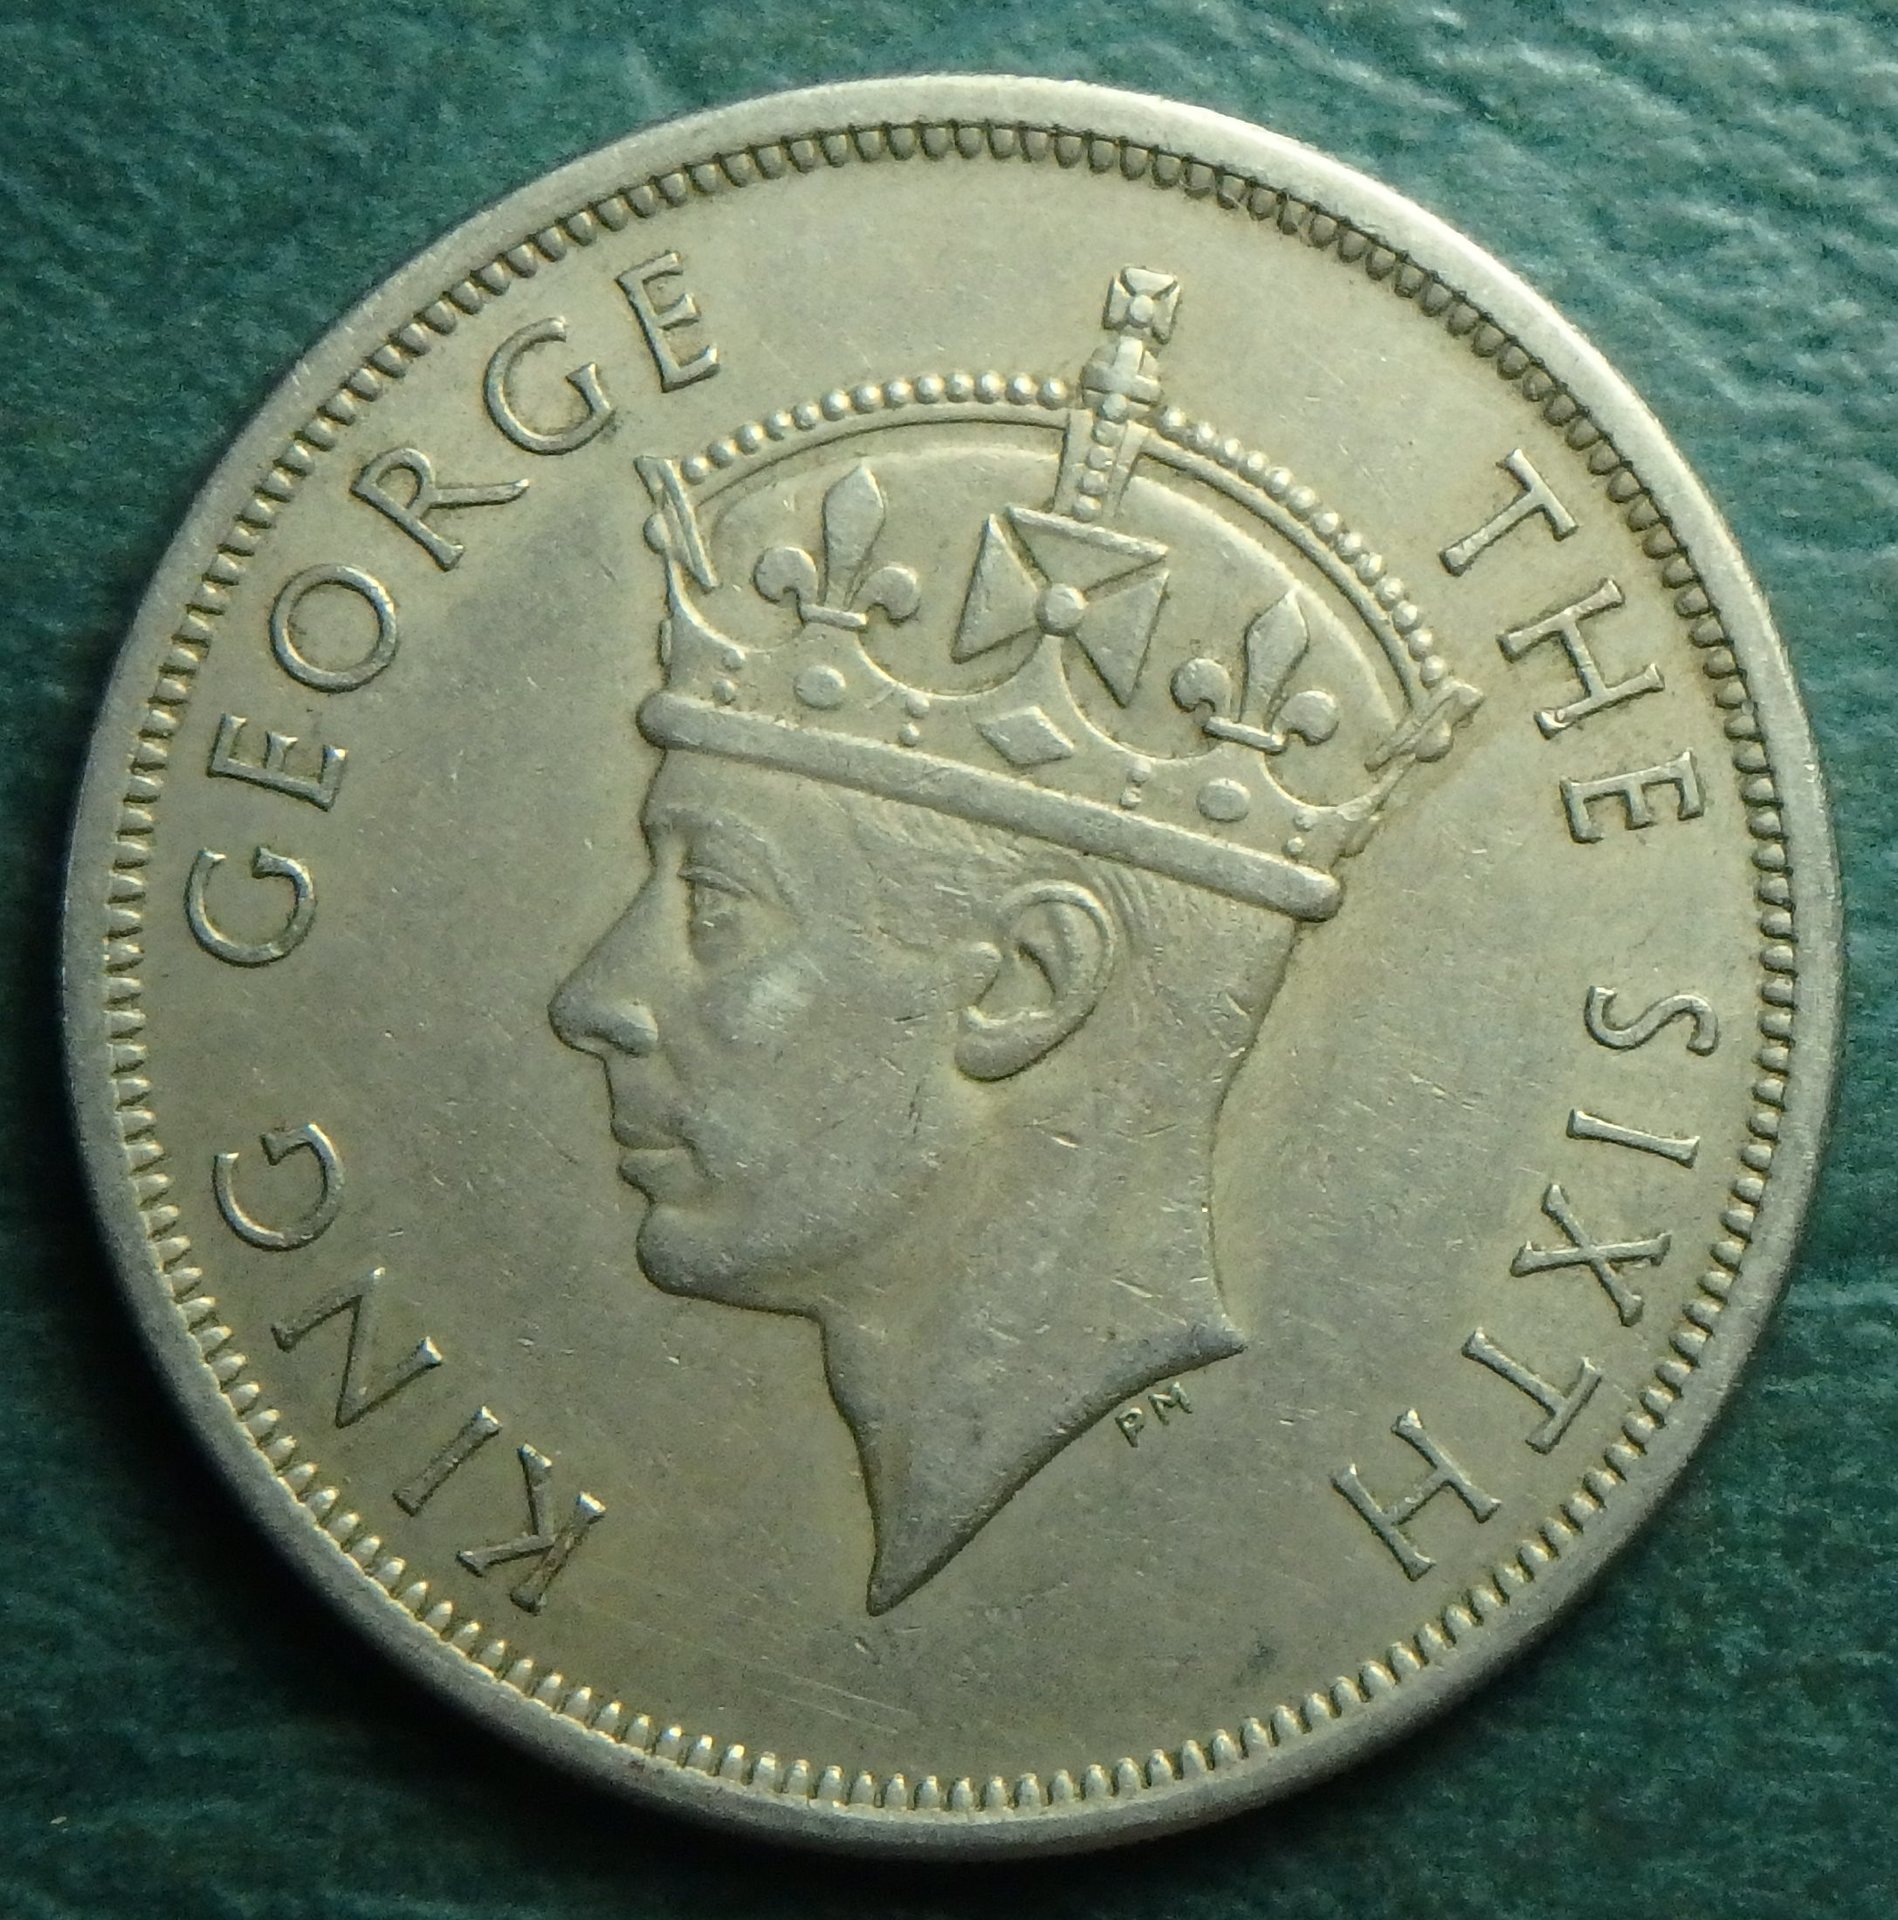 1951 S Rhodesia half crown obv.JPG